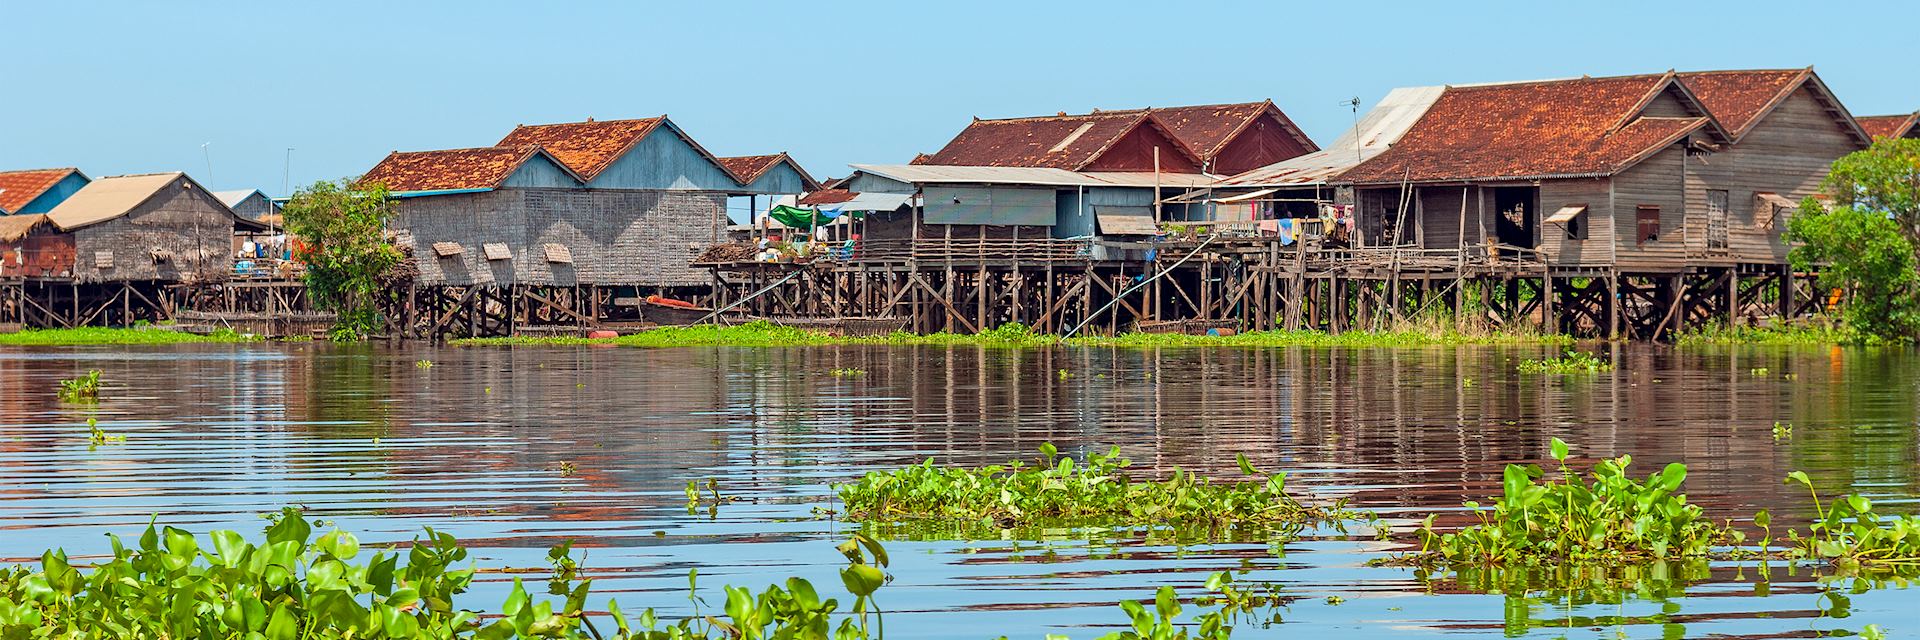 Kompong Khleang, Tonle Sap Lake